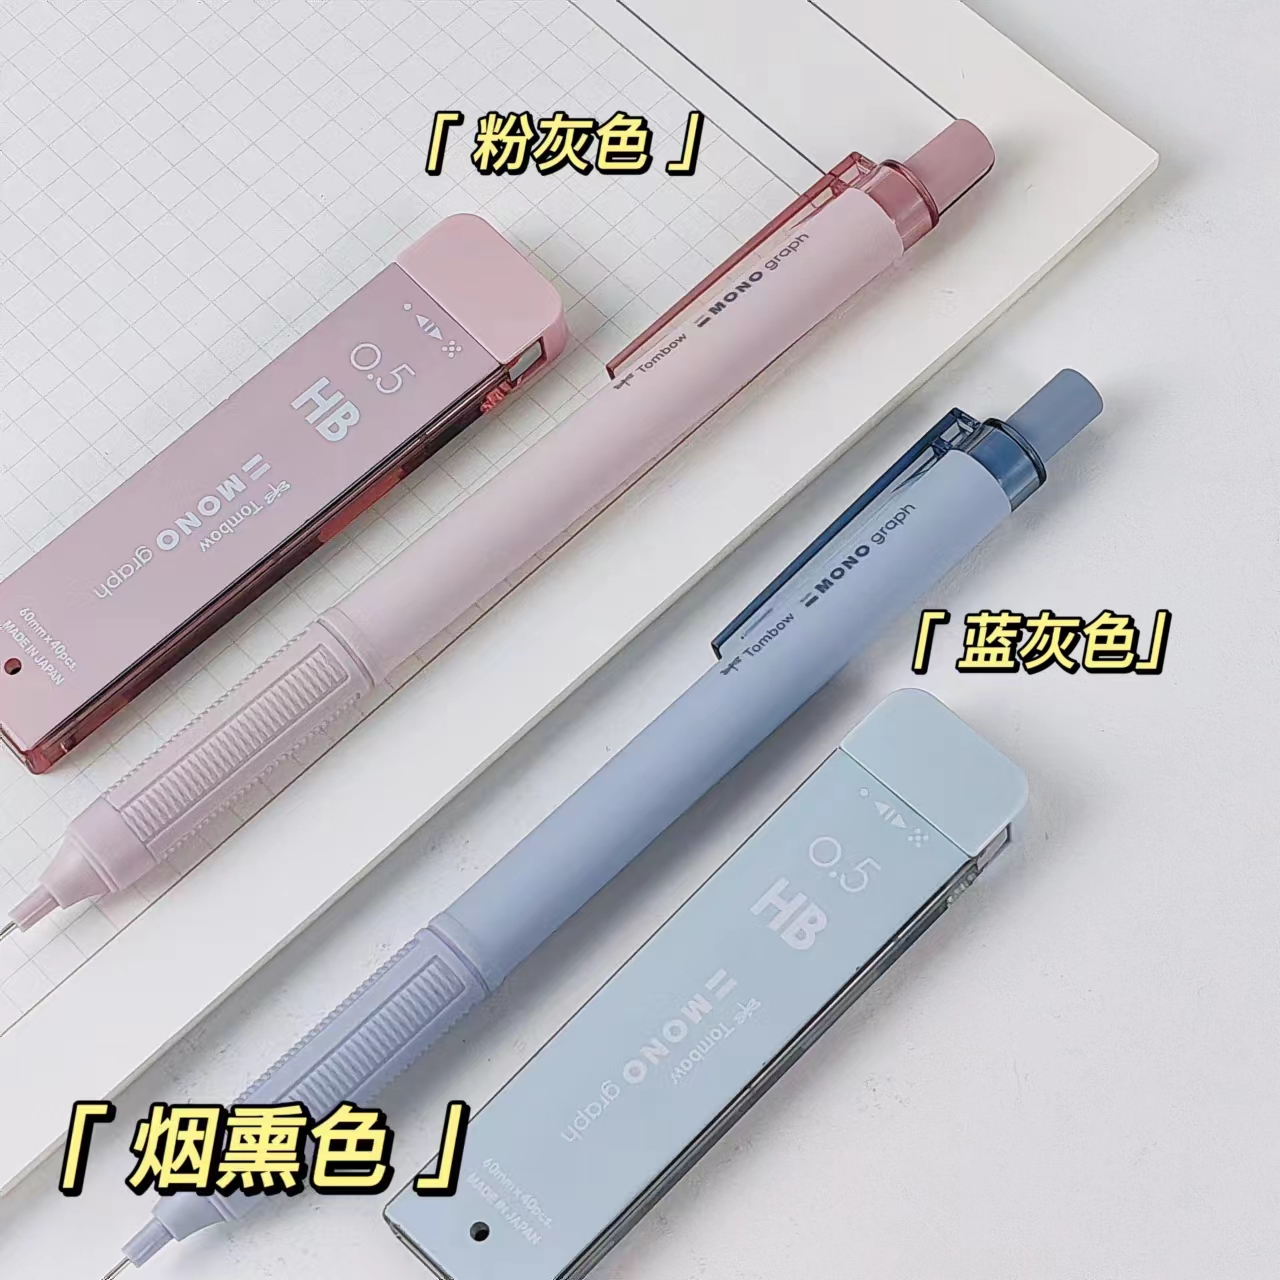 【蓝灰色】日本tombow蜻蜓自动铅笔mono套装蓝白条纹绘图书写0.5烟熏色0.3小学生用活动铅笔dpa-122高颜值